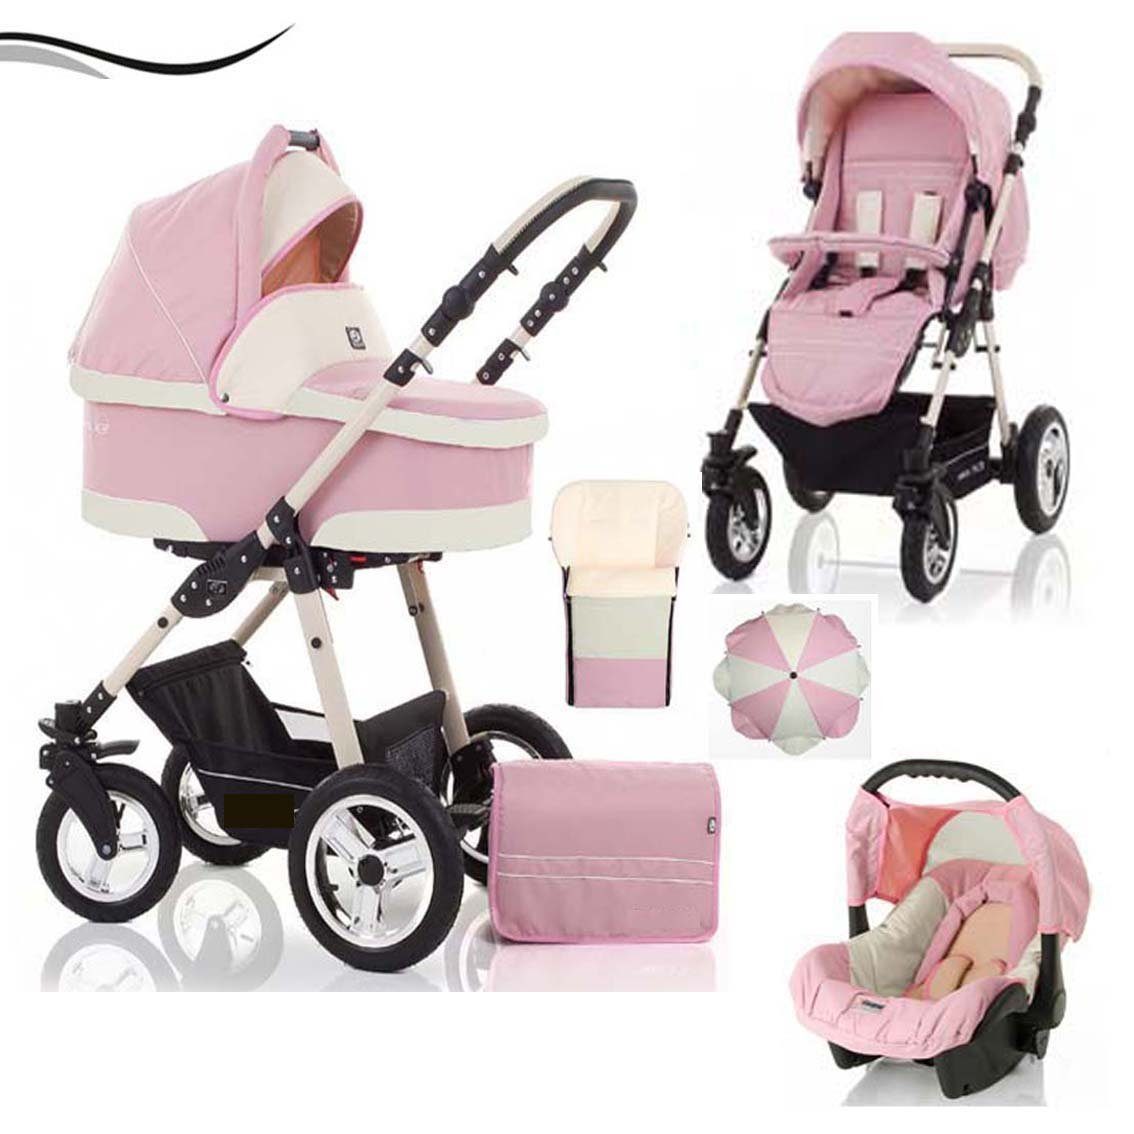 babies-on-wheels Kombi-Kinderwagen City Star 5 in 1 inkl. Autositz, Sonnenschirm und Fußsack - 18 Teile - von Geburt bis 4 Jahre in 16 Farben Rosa-Creme | Kombikinderwagen